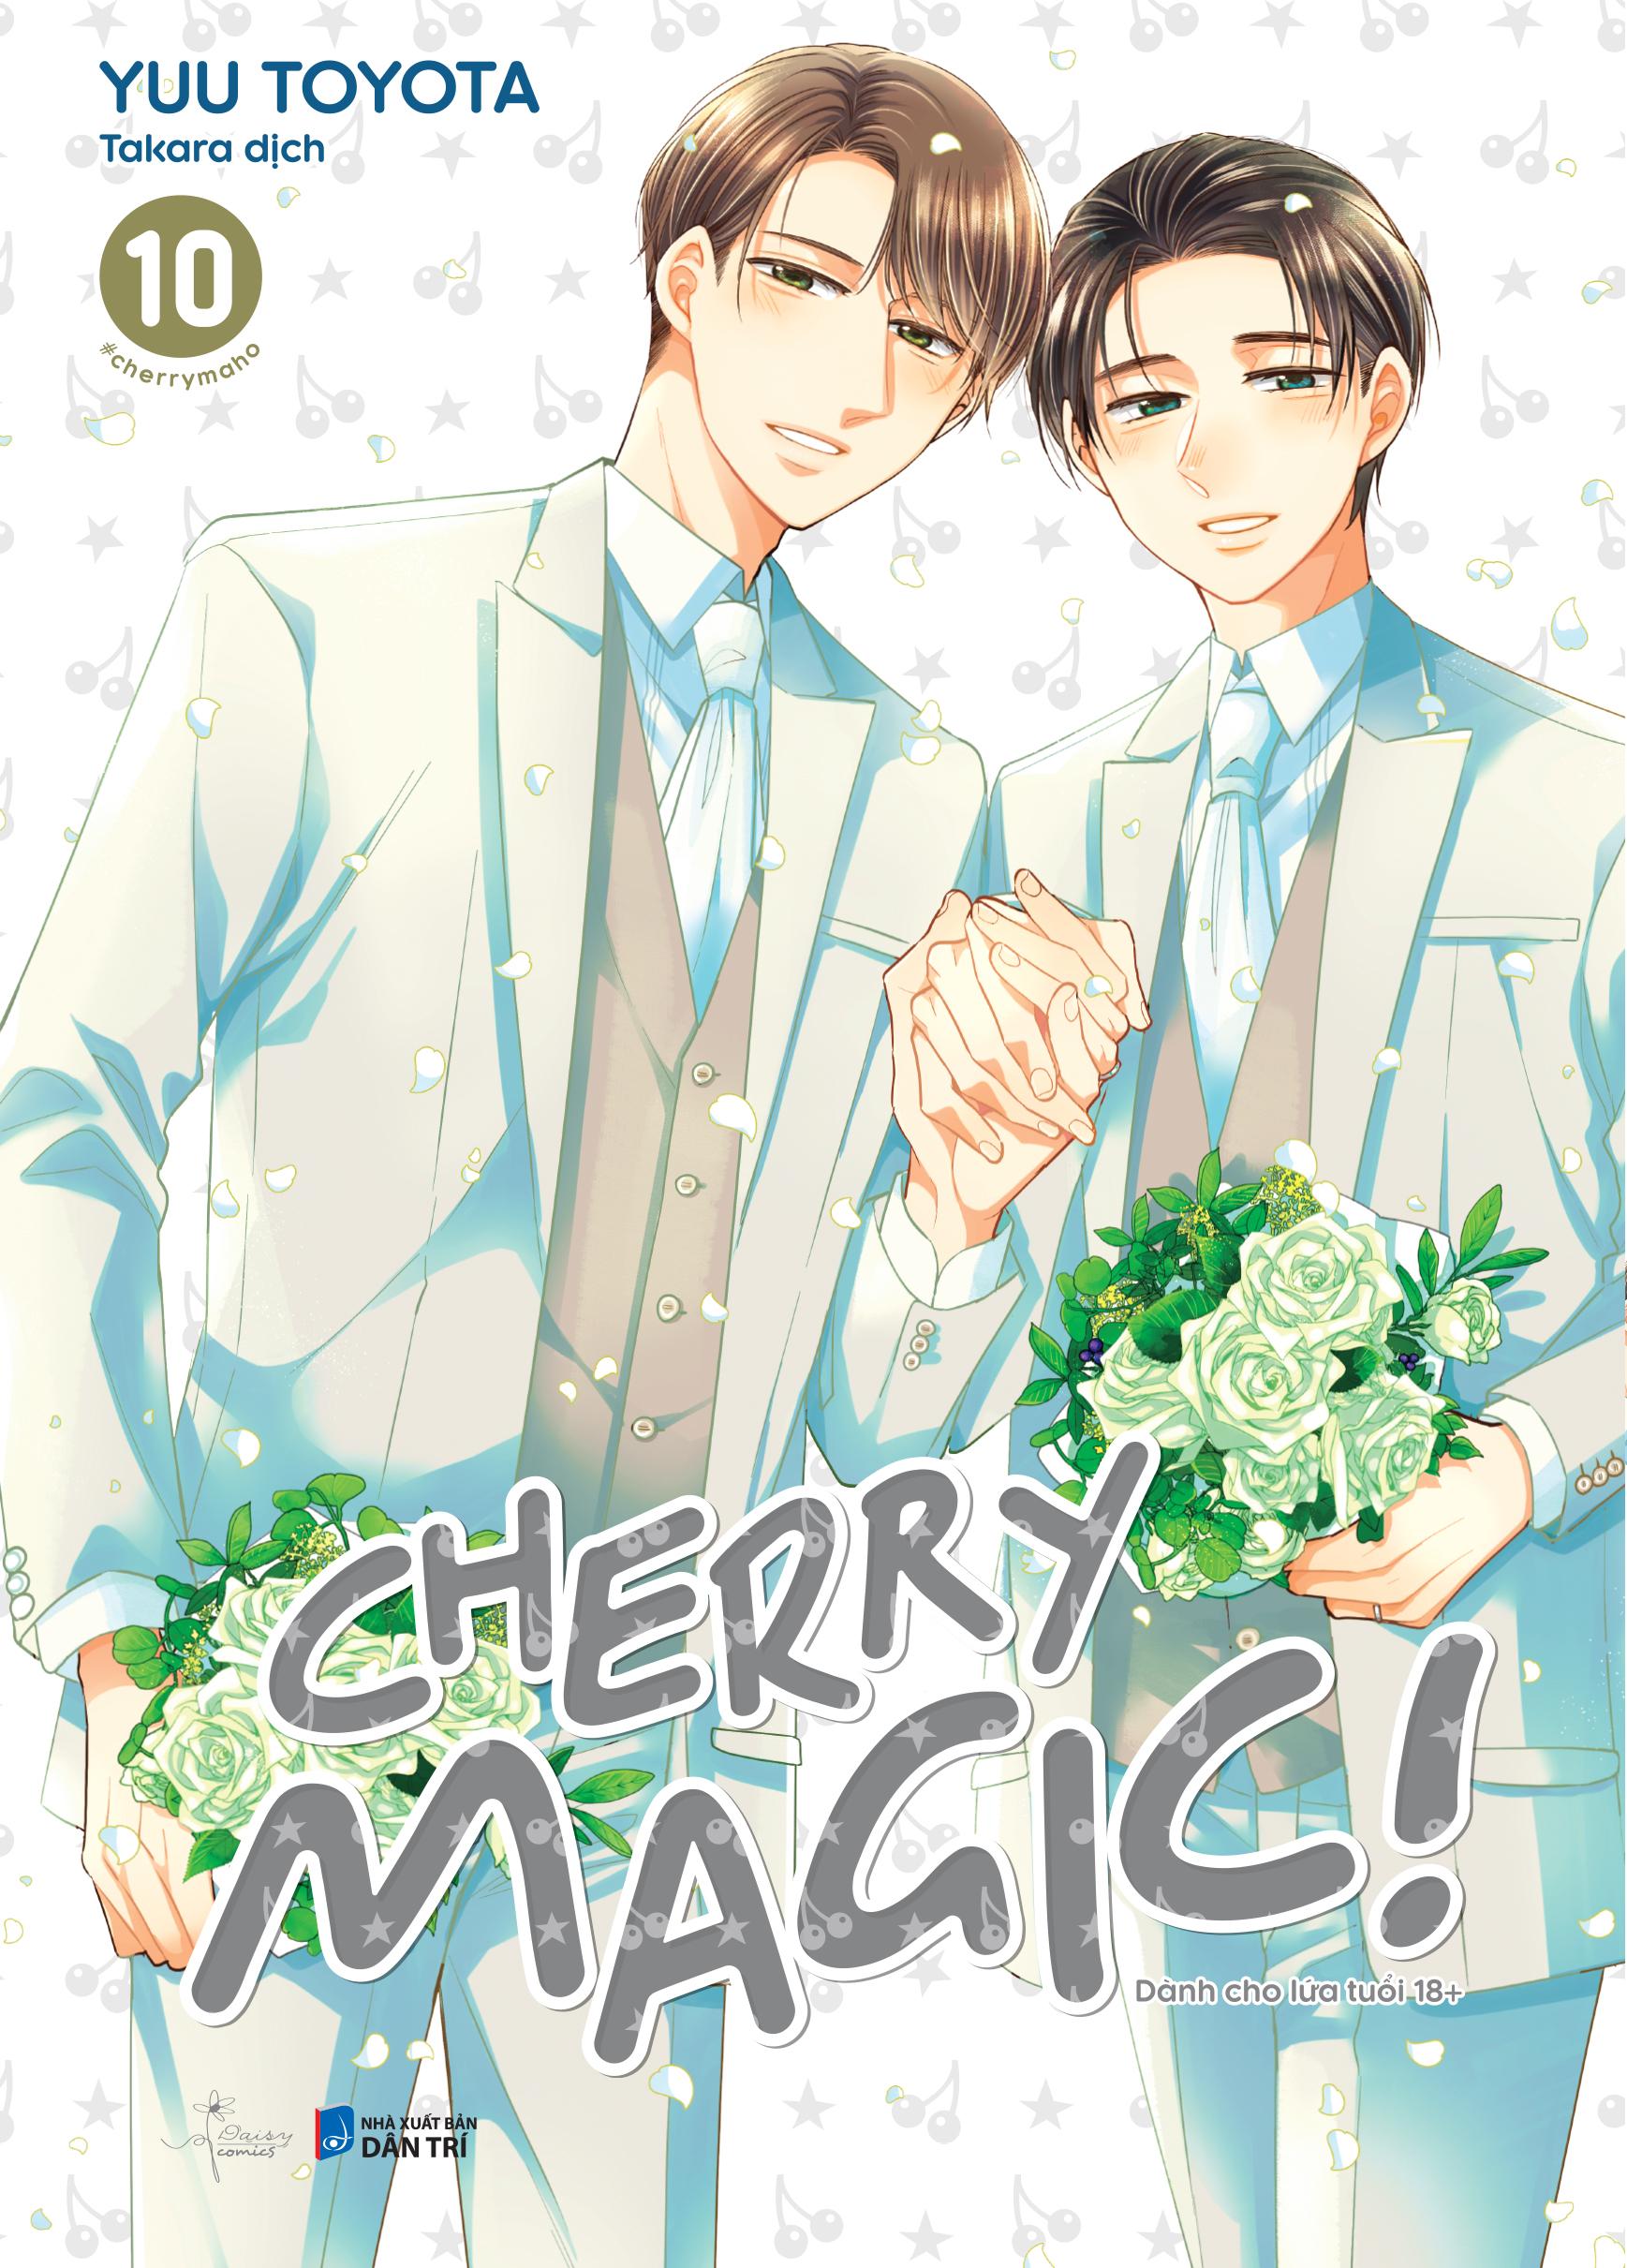 Cherry Magic - Tập 10 - Tặng Kèm Postcard